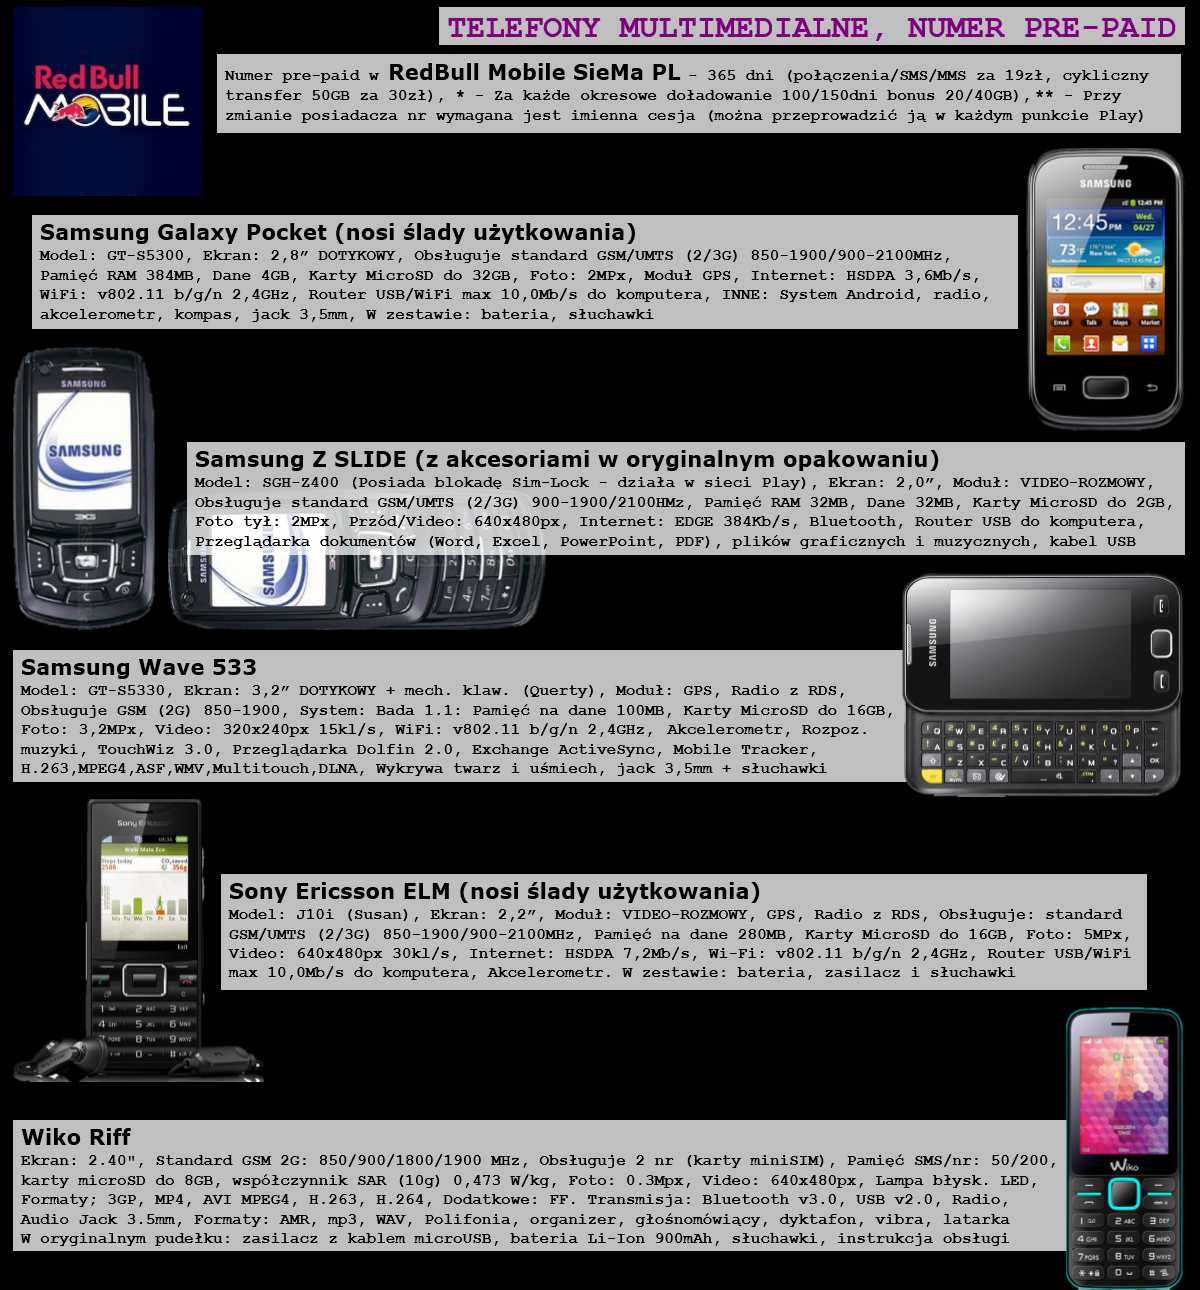 Samsung Galaxy Pocket (Model: GT-S5300)